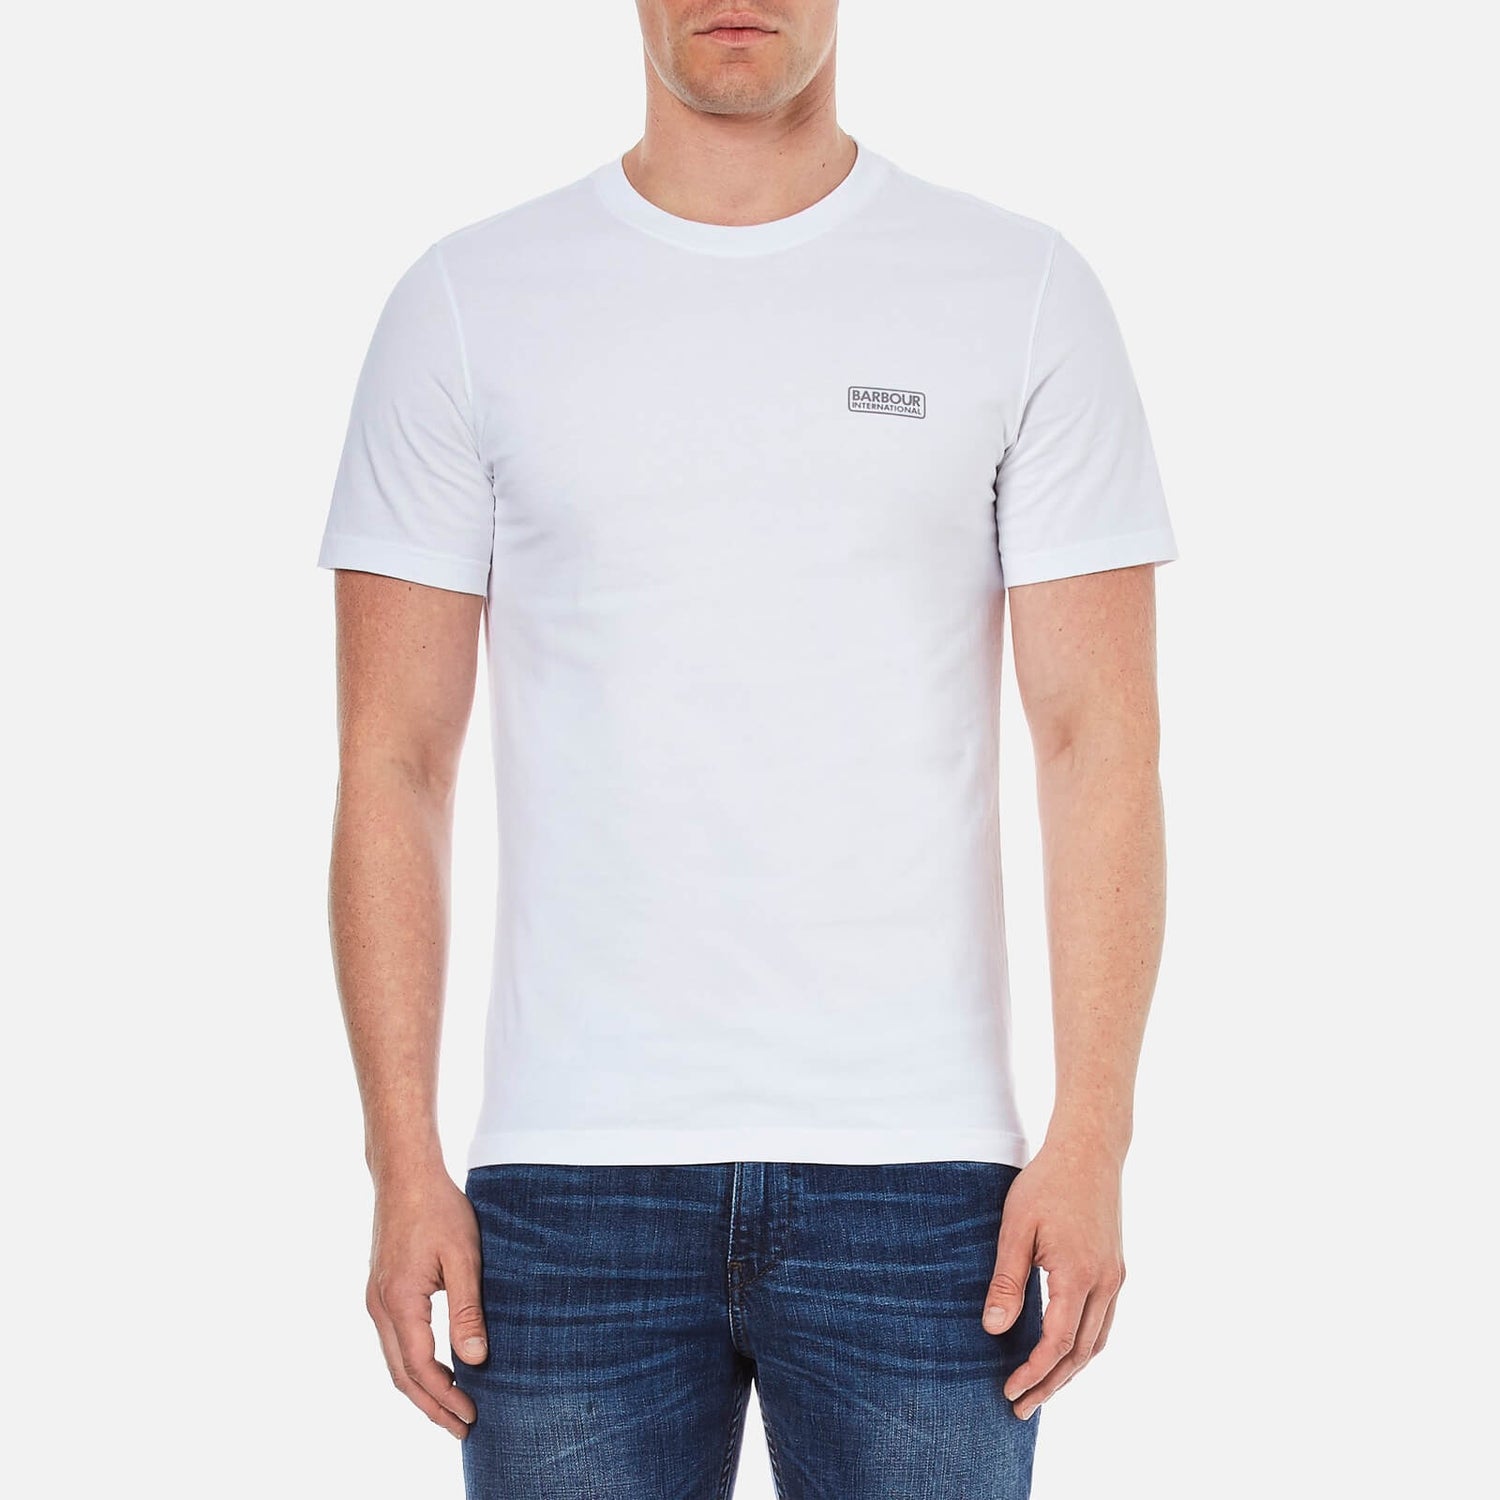 Barbour International Men's Small Logo T-Shirt - White